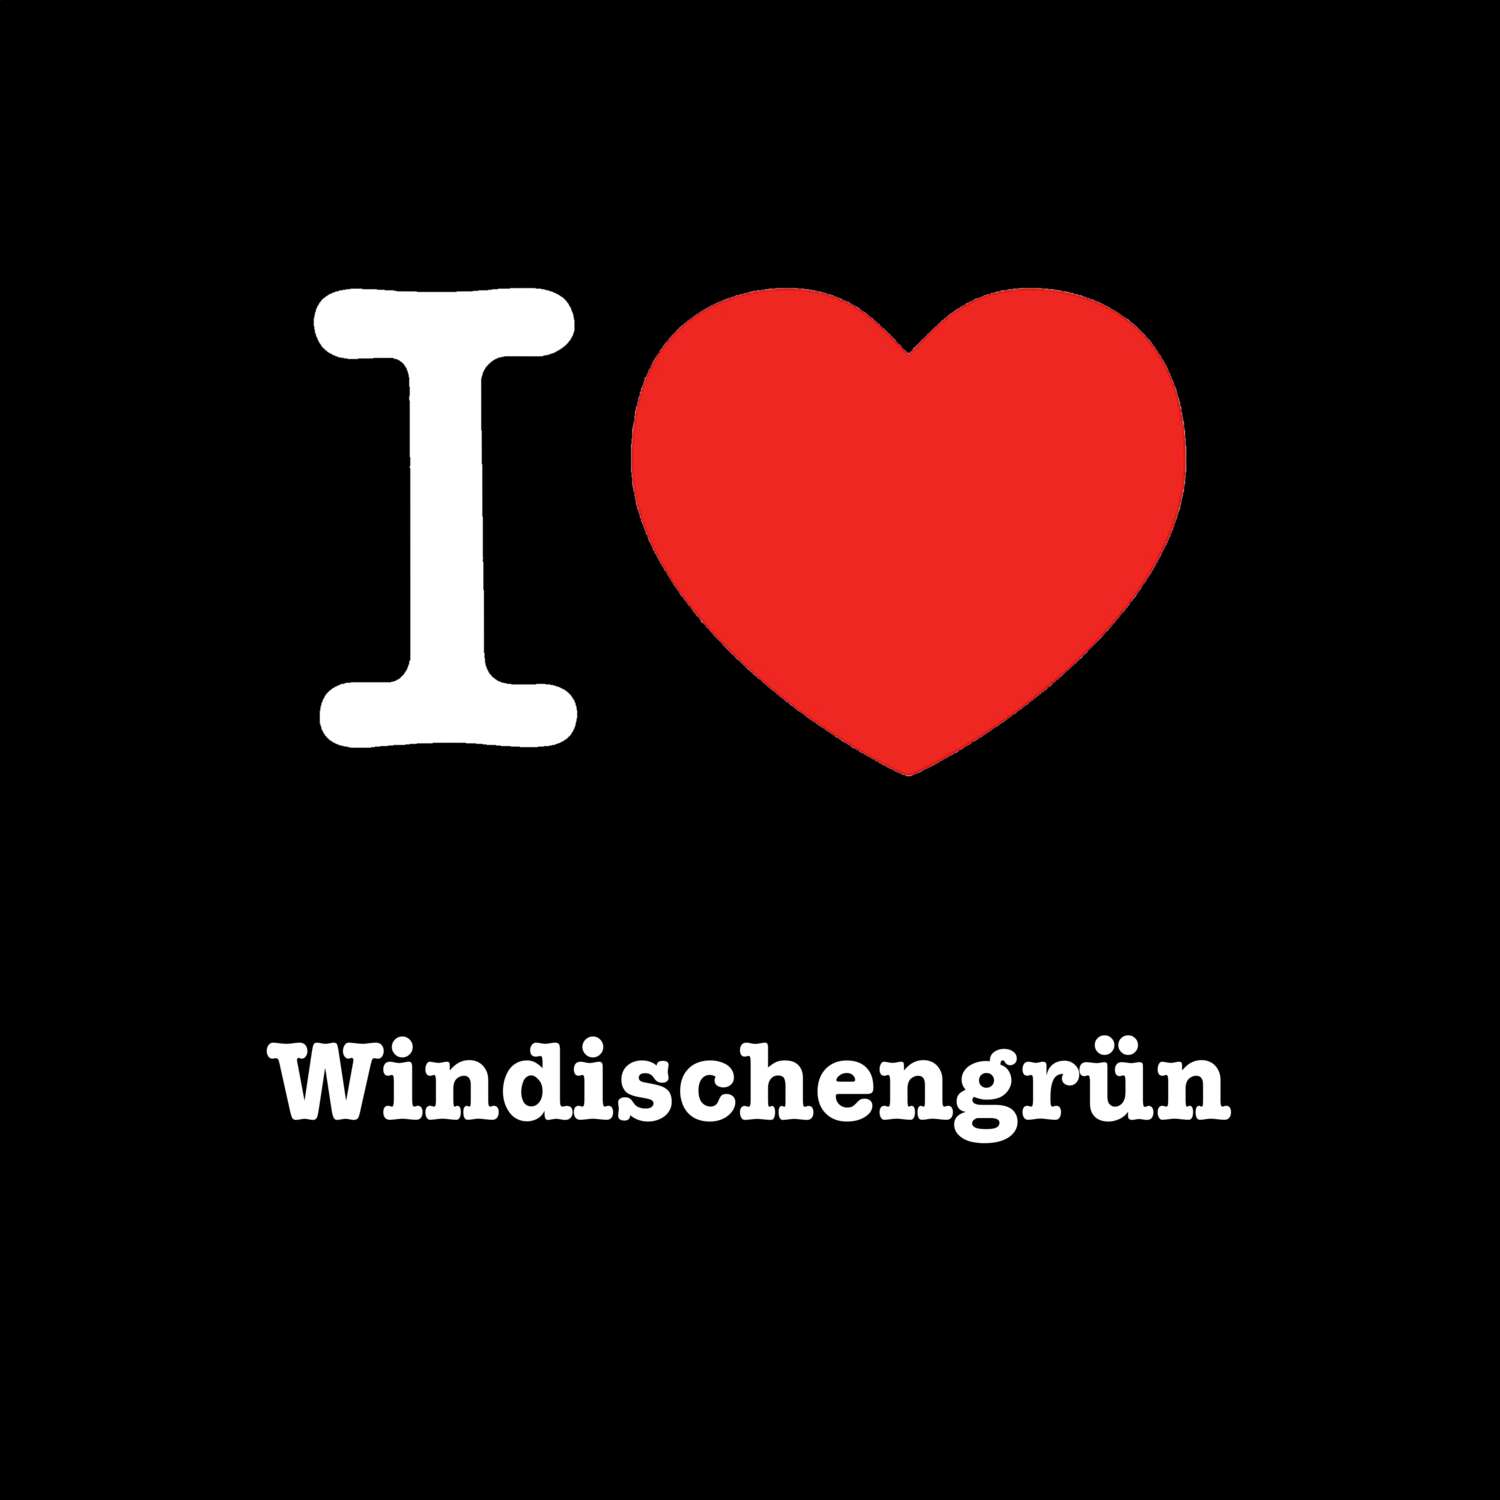 Windischengrün T-Shirt »I love«